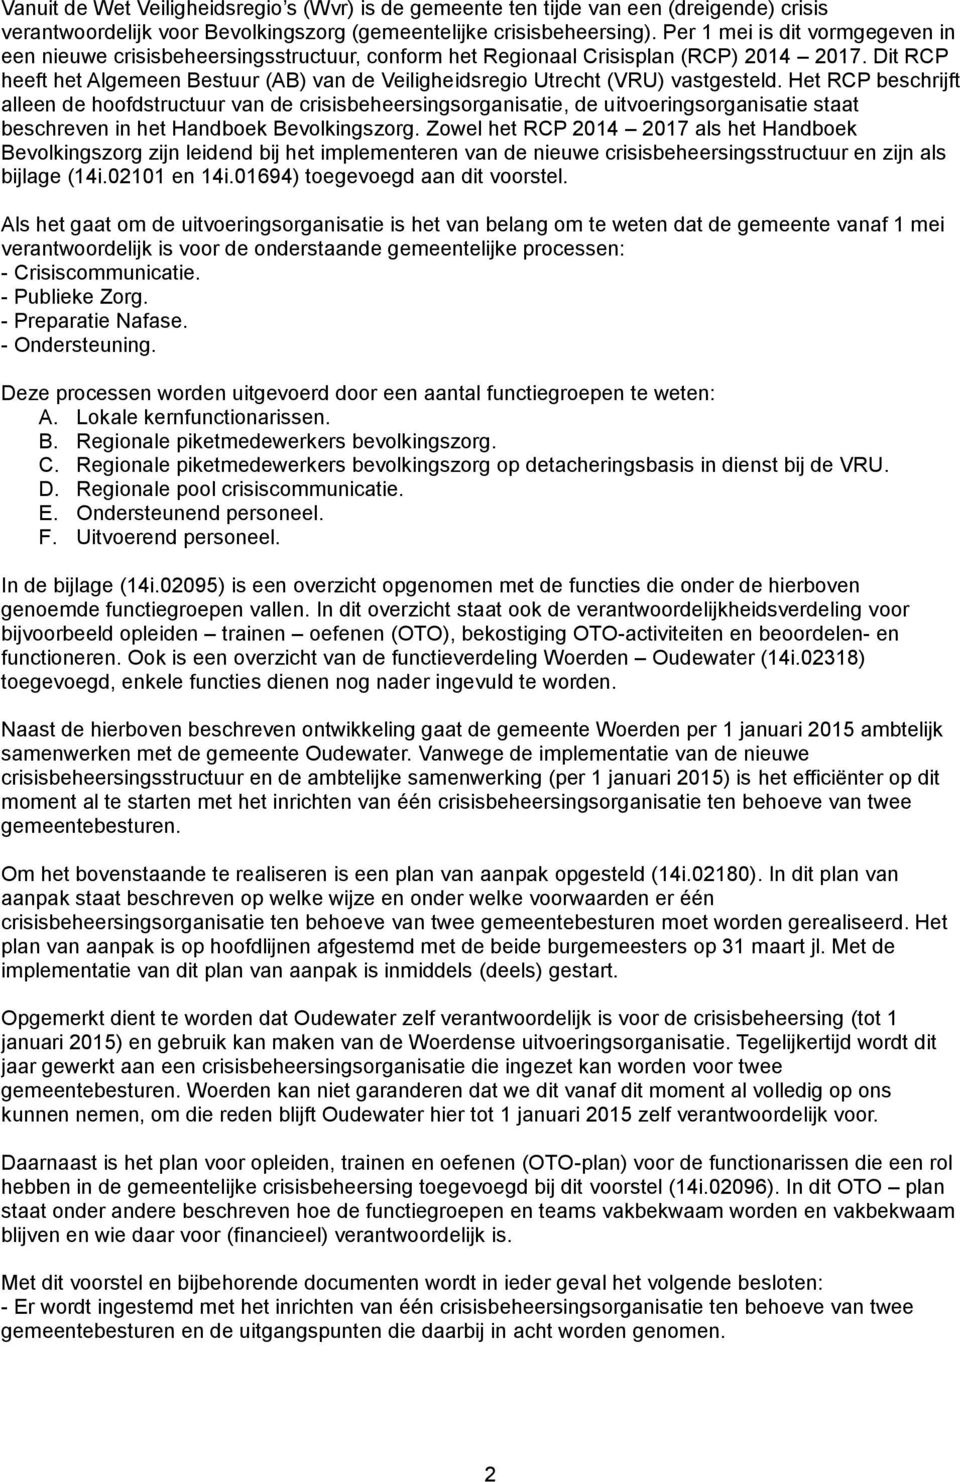 Dit RCP heeft het Algemeen Bestuur (AB) van de Veiligheidsregio Utrecht (VRU) vastgesteld.